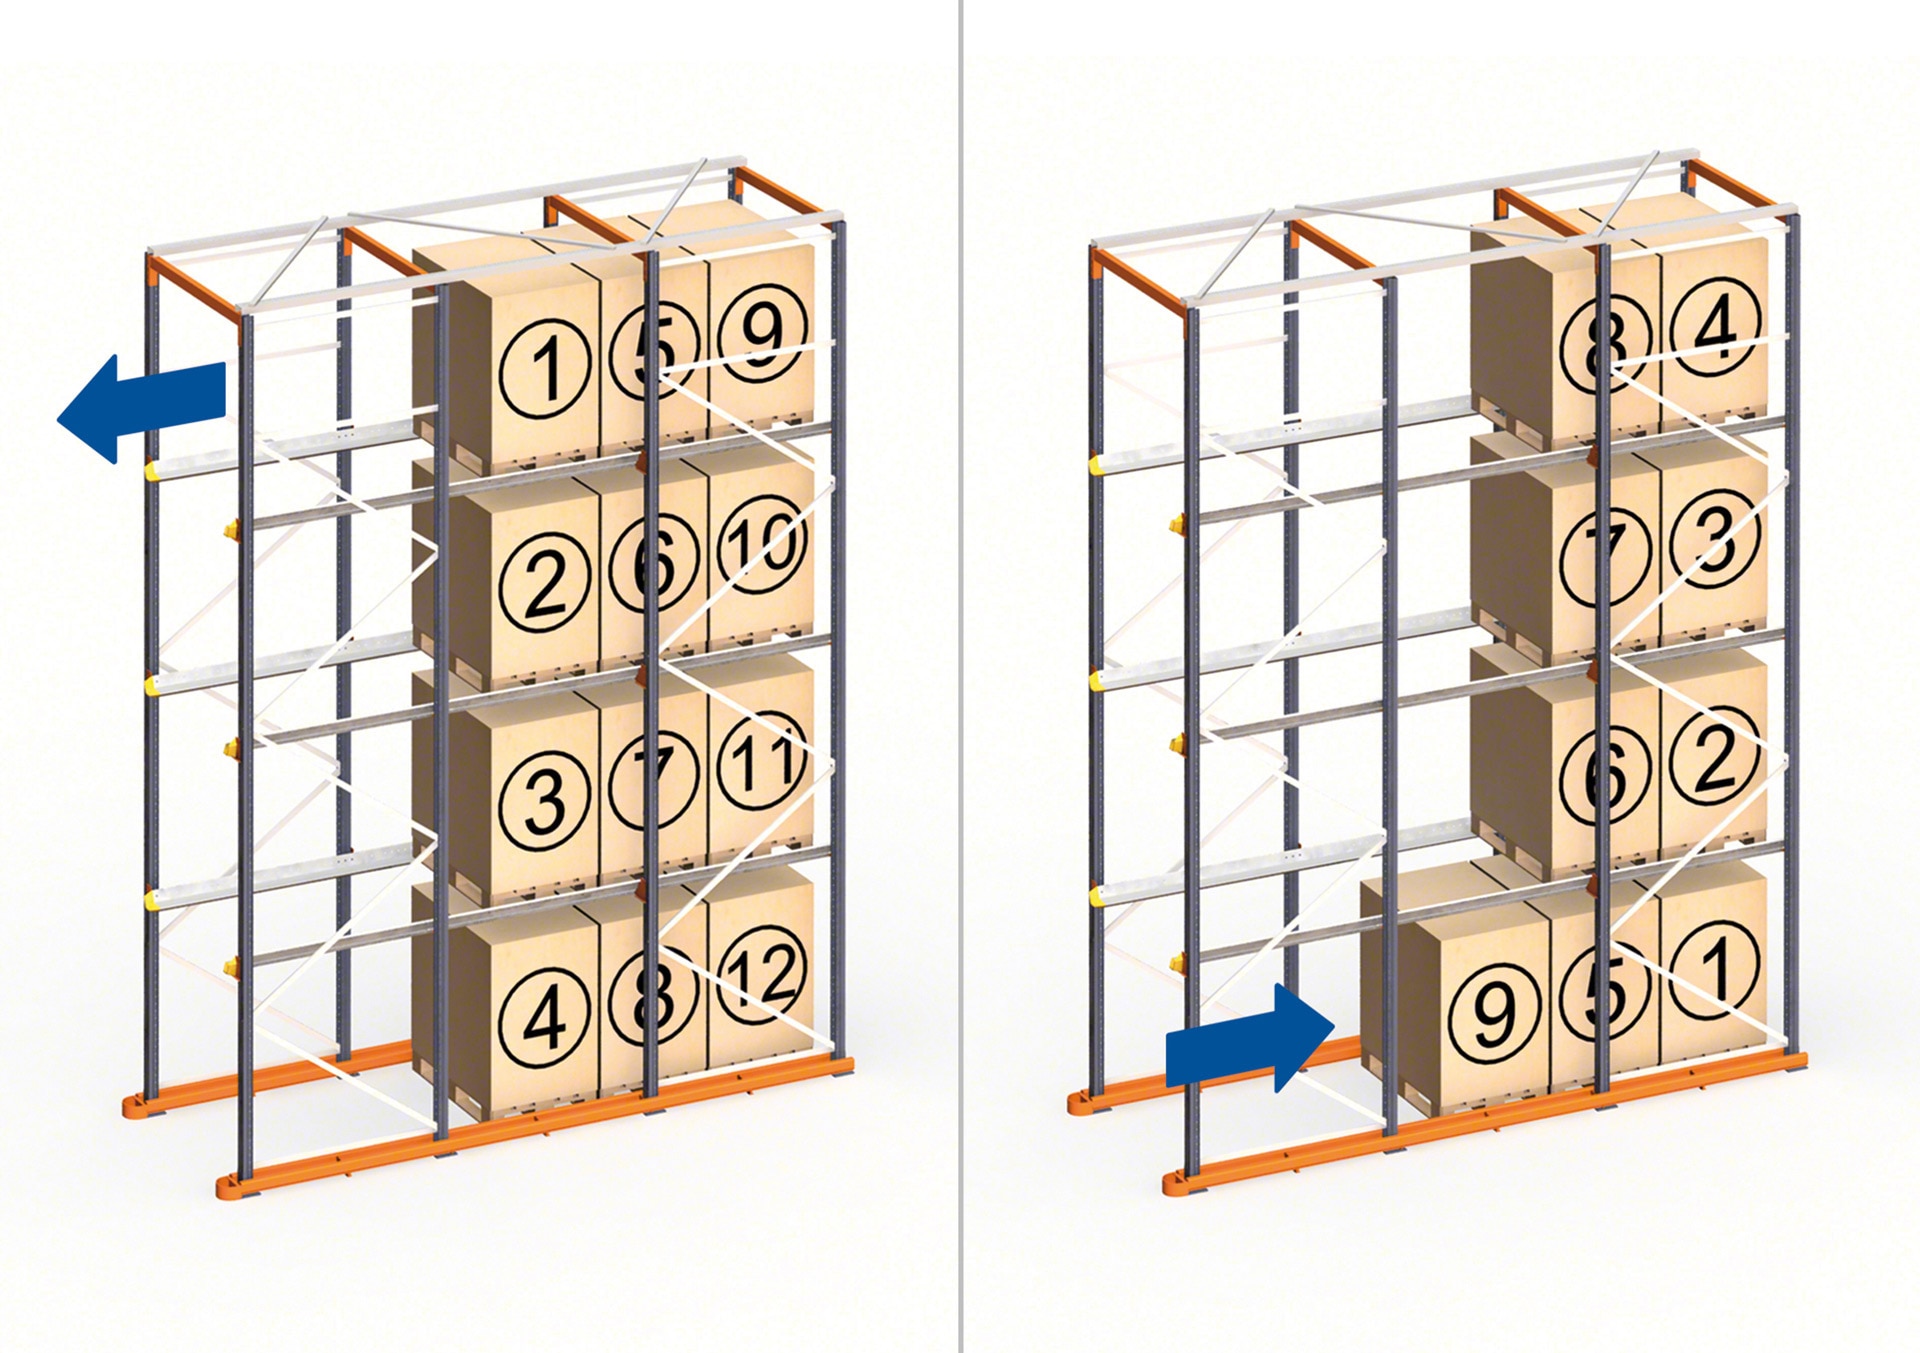 Los racks drive-in funcionan en almacenes que emplean el método de orden de carga LIFO